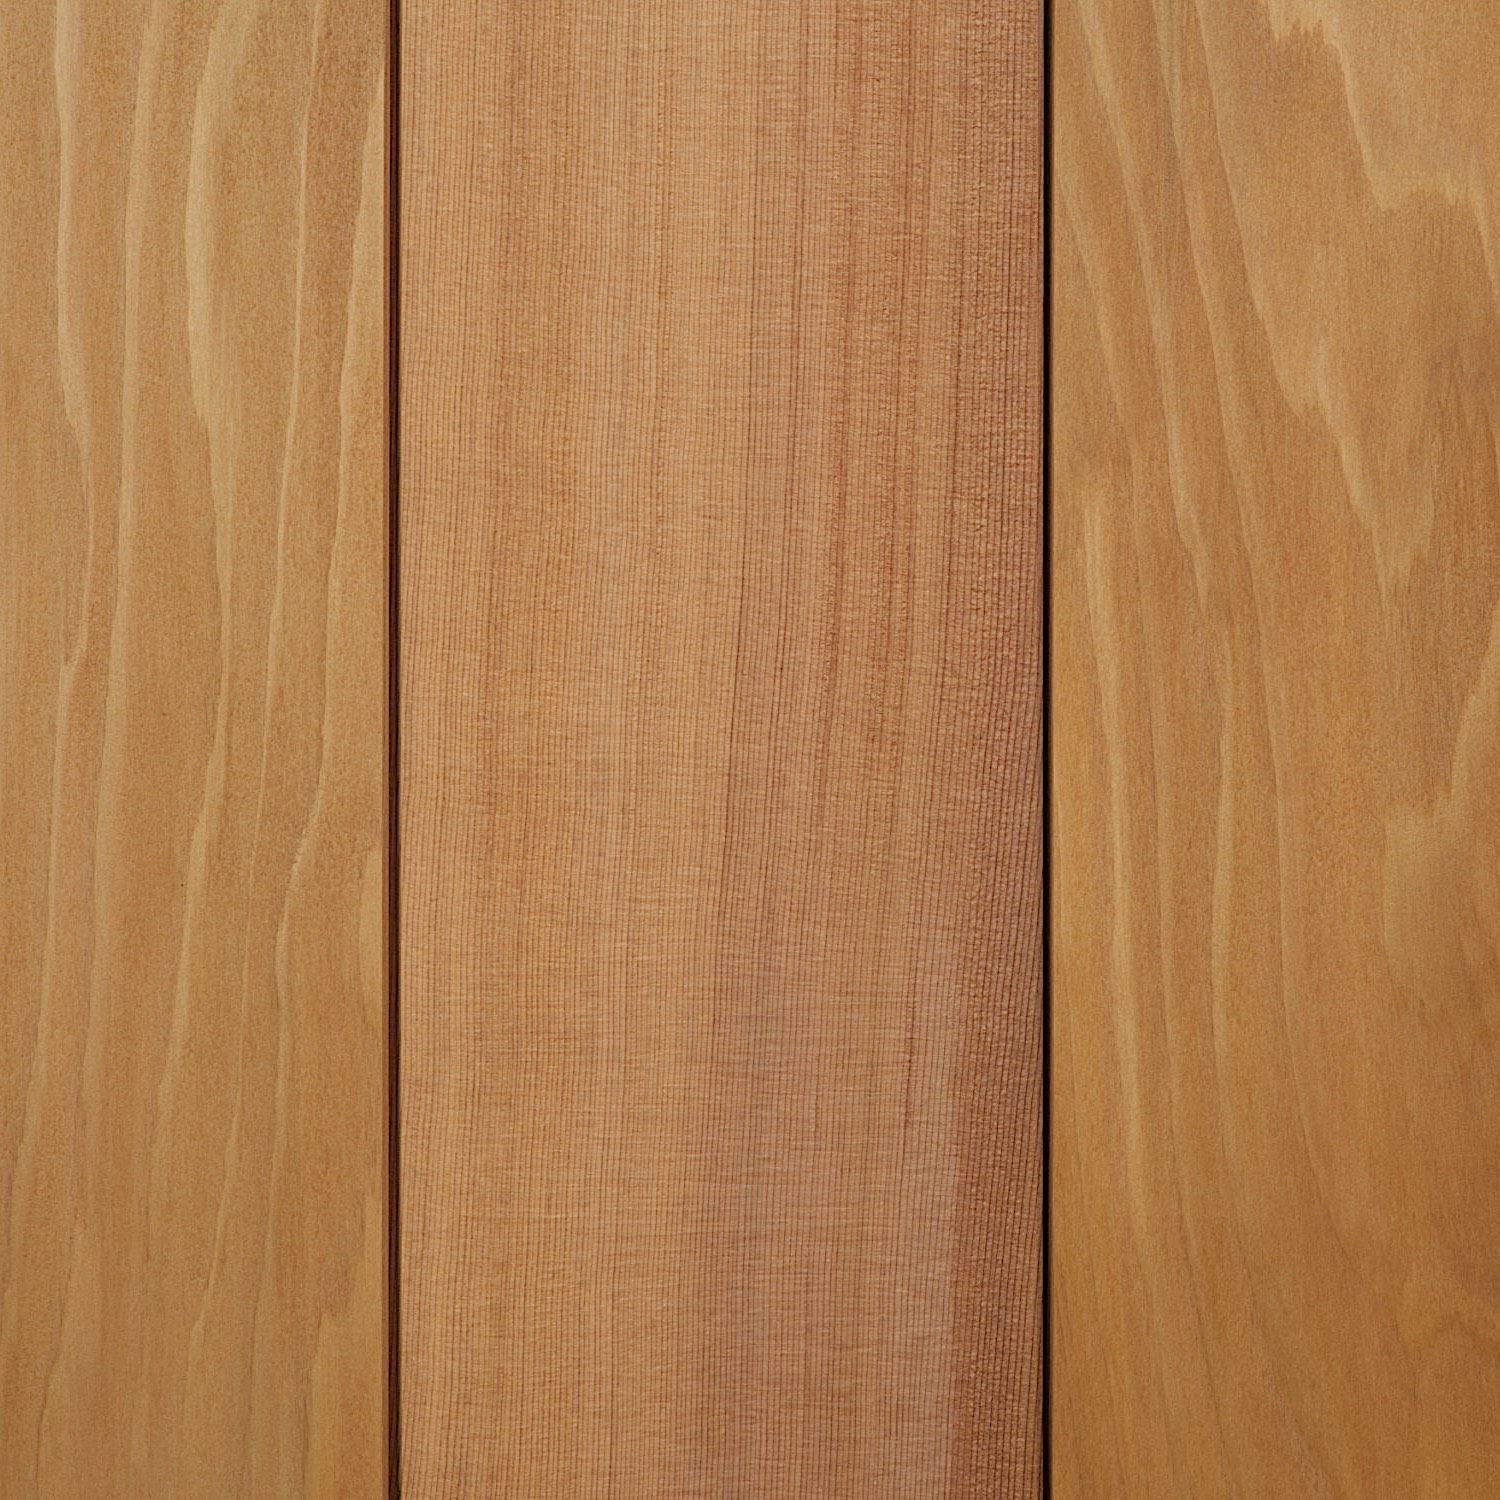 cedar smooth natural mixed grain cladding